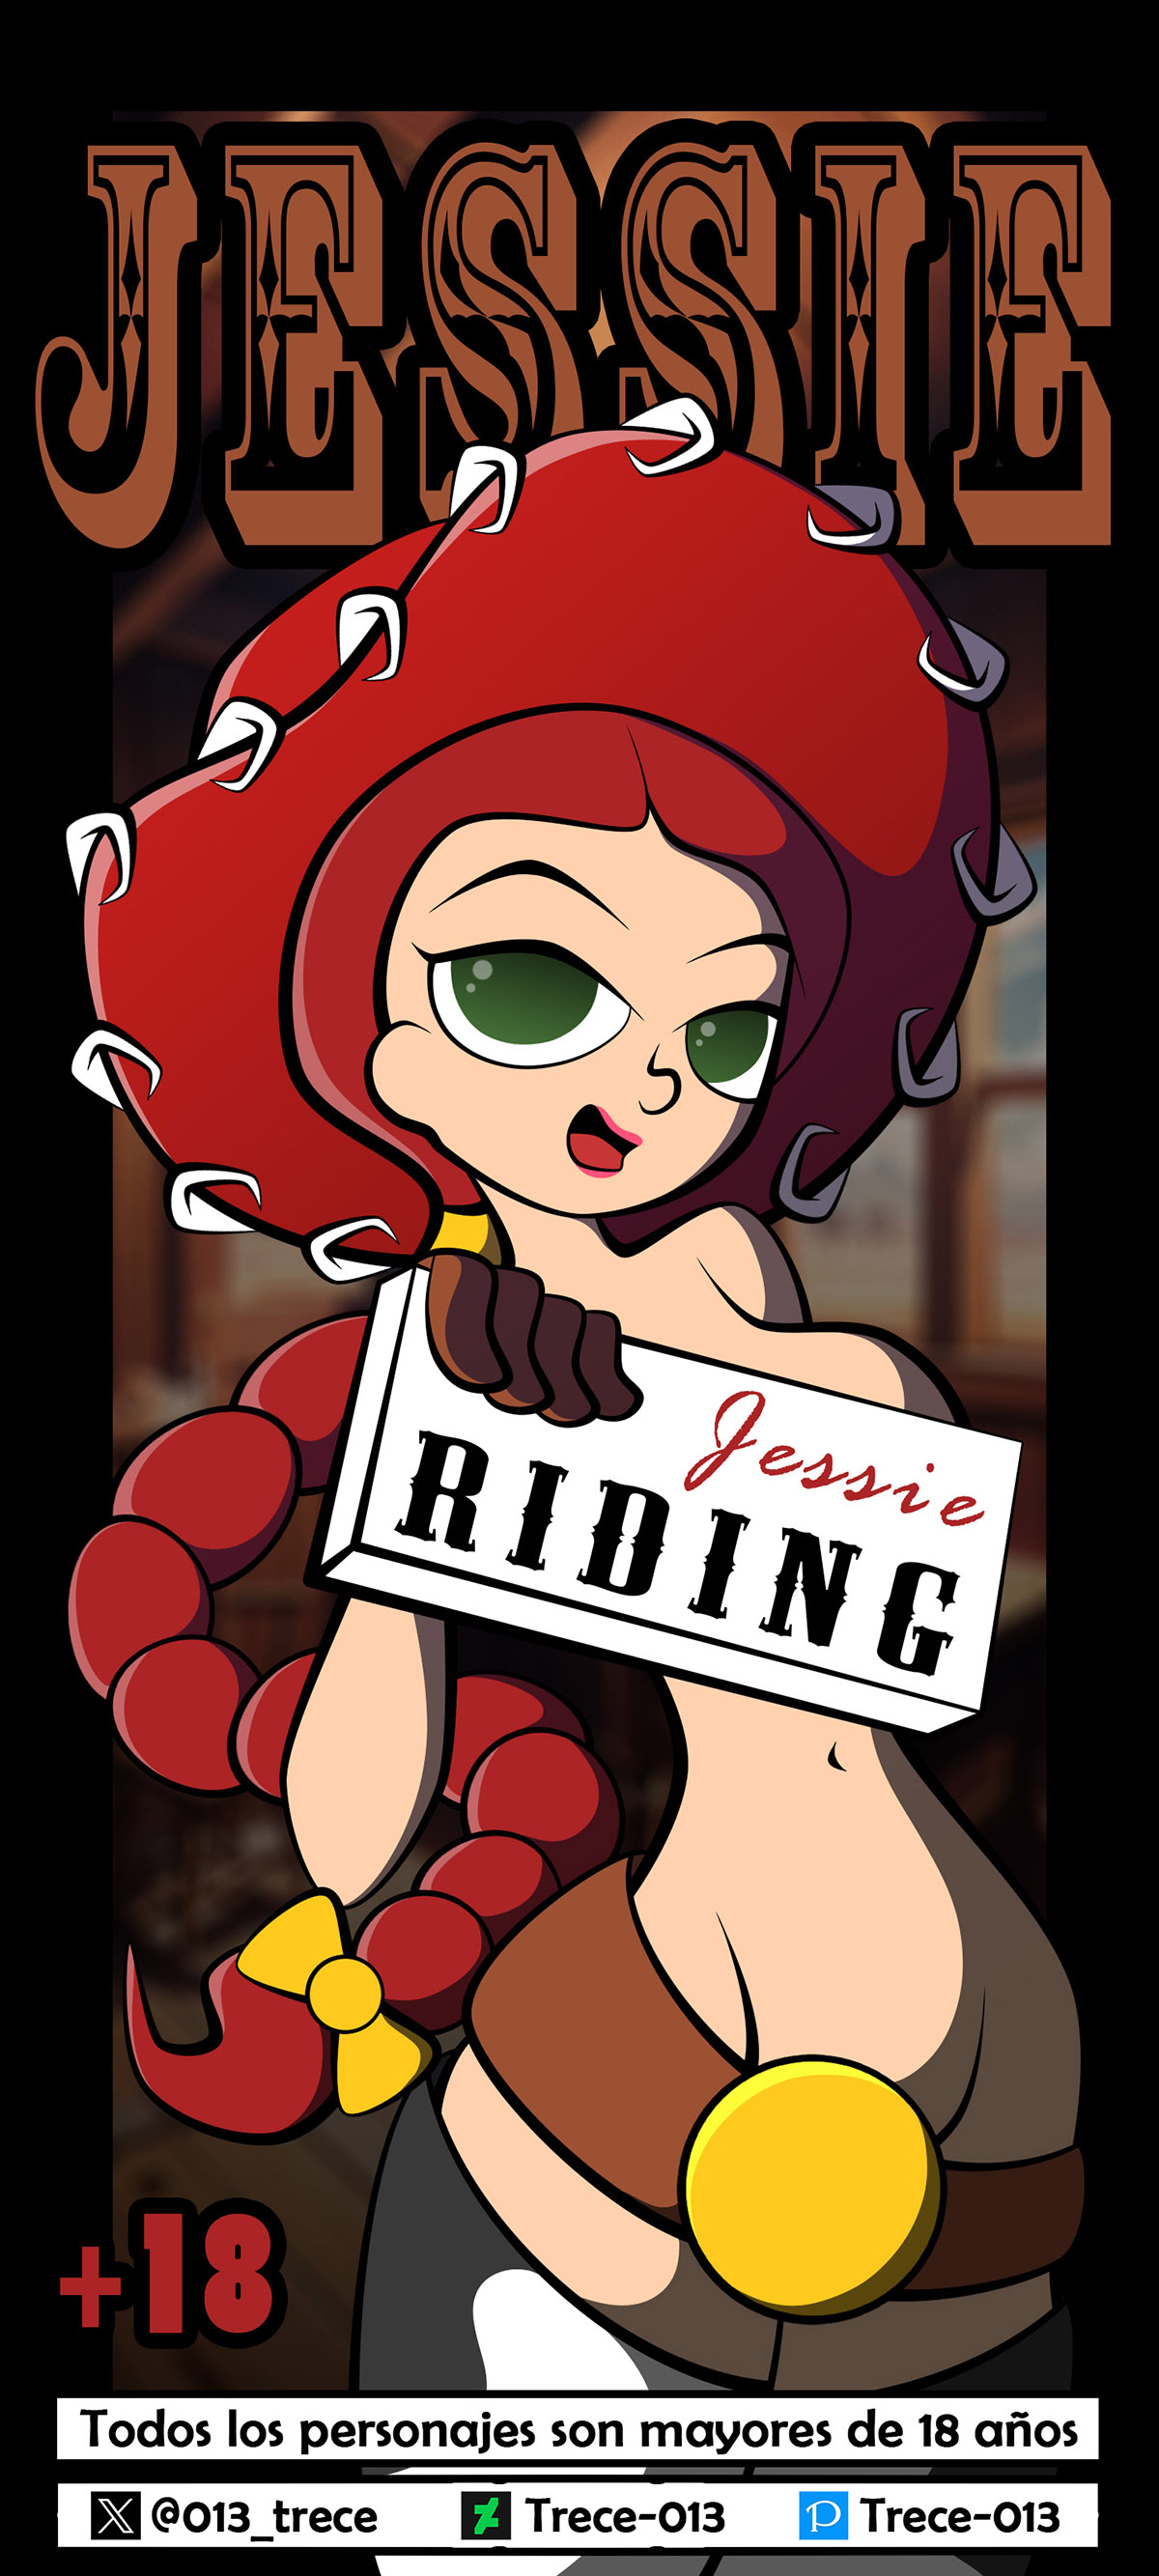 JESSIE Riding